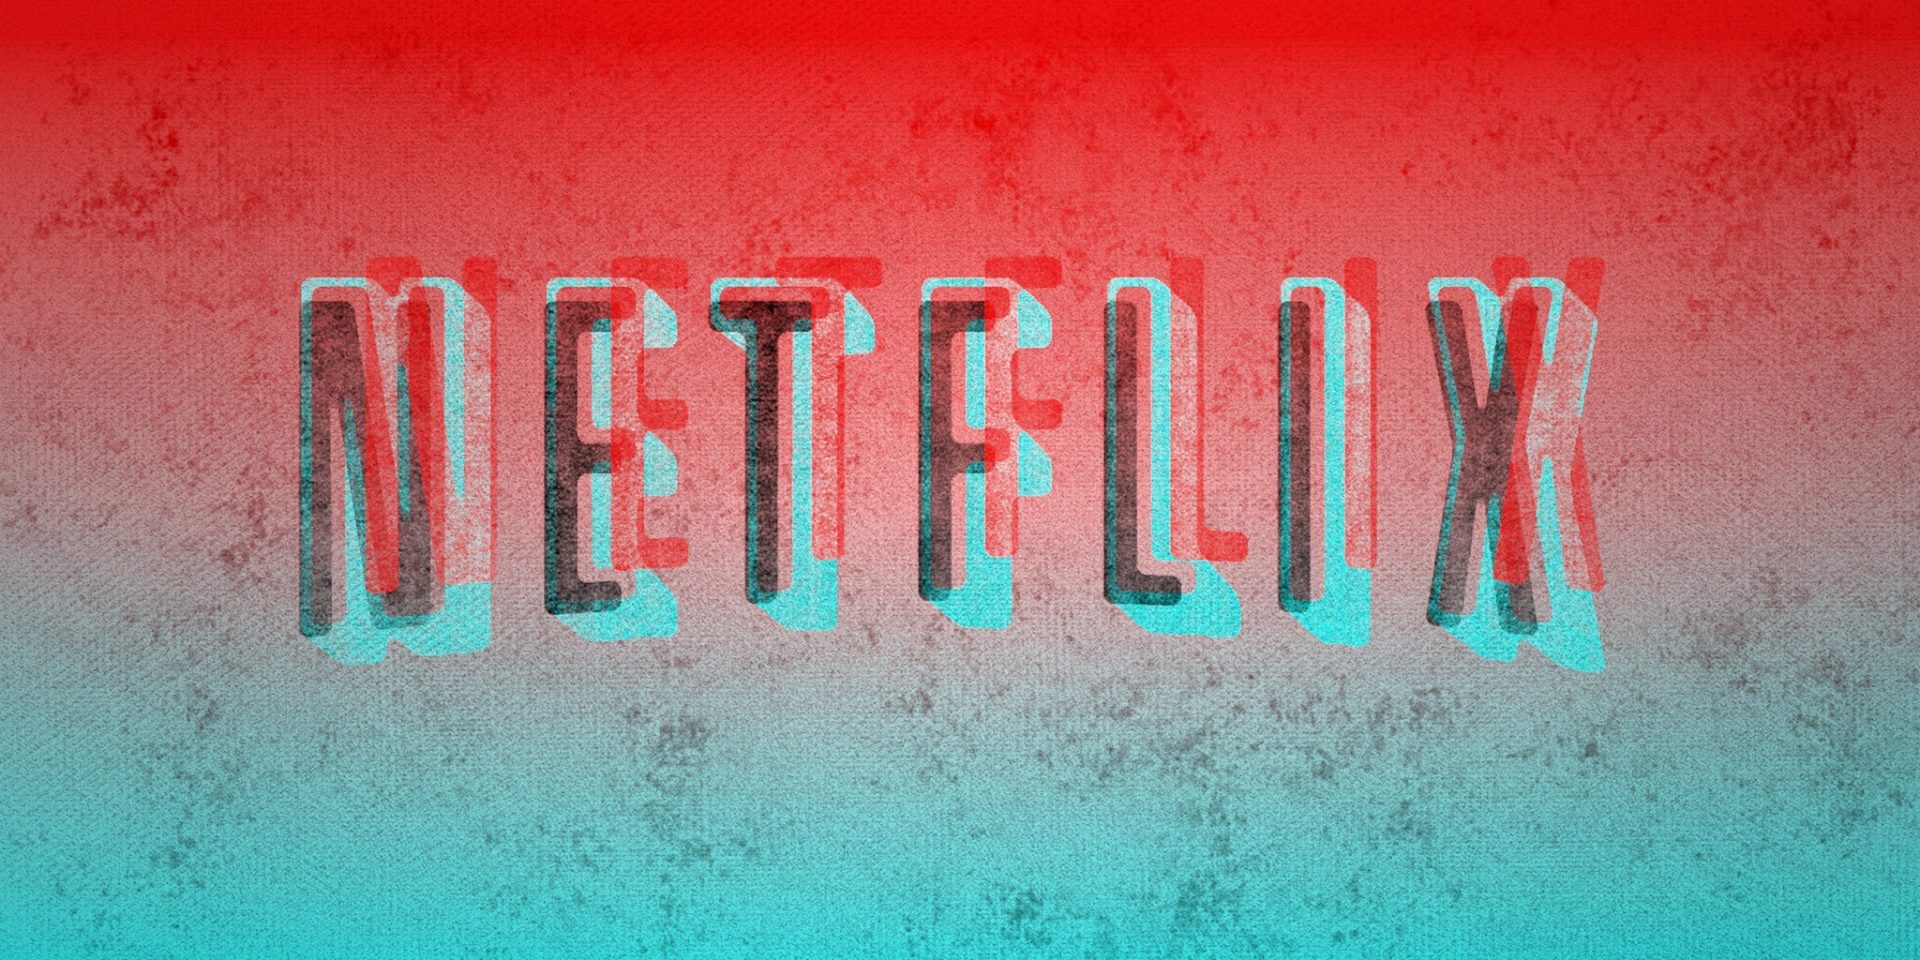 Série cancelada pela Netflix é ressuscitada por outro canal